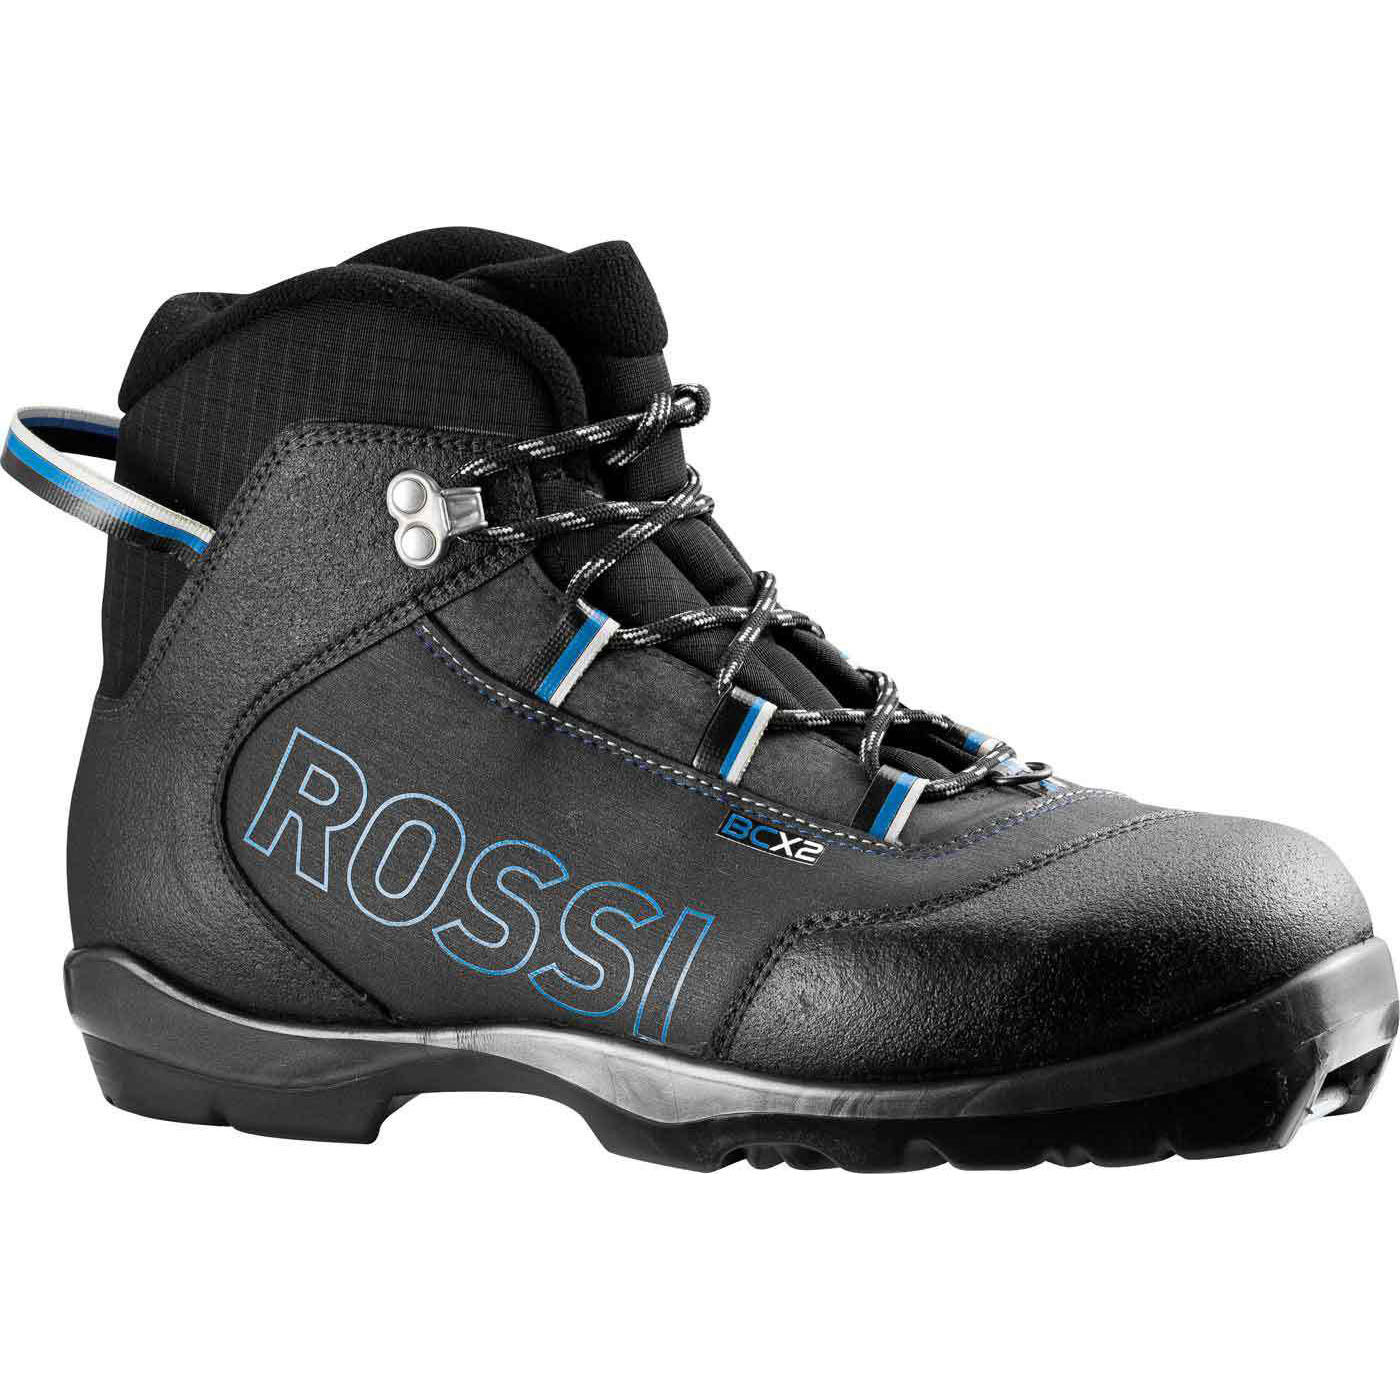 特価Rossignol X-10 Skate FW Womens XC Ski Boots 42並行輸入商品 売り出し正本 